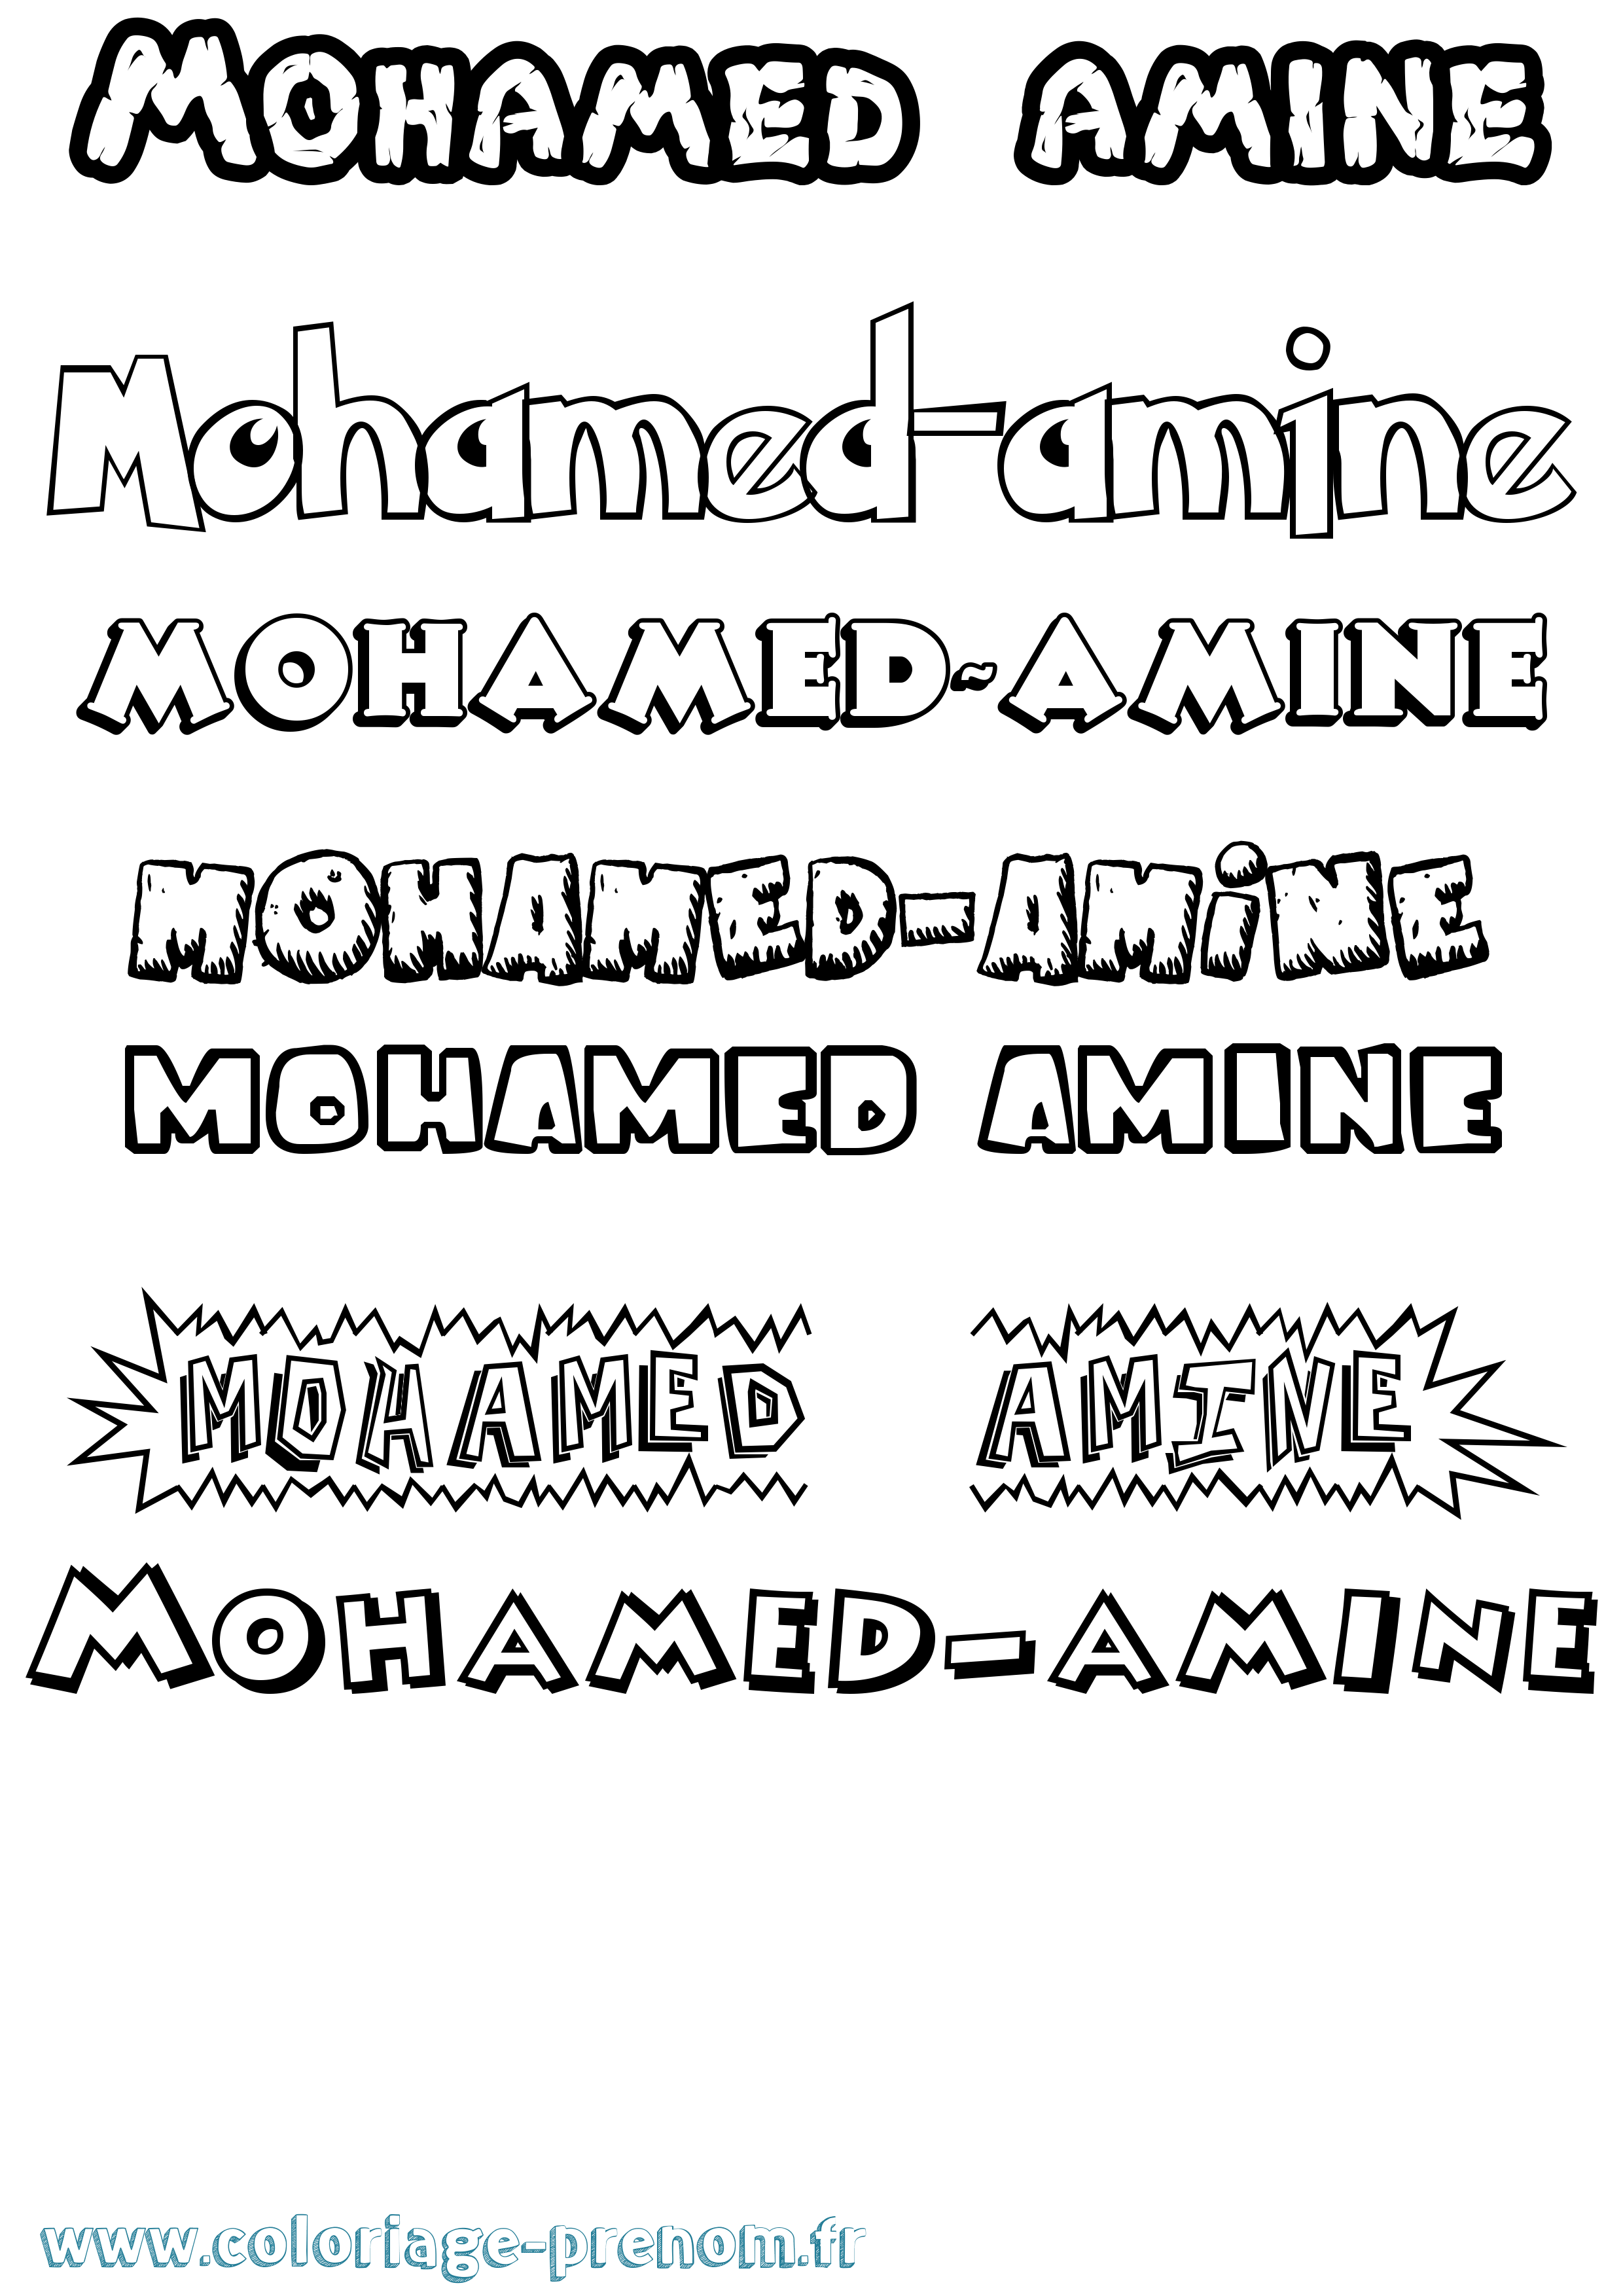 Coloriage prénom Mohamed-Amine